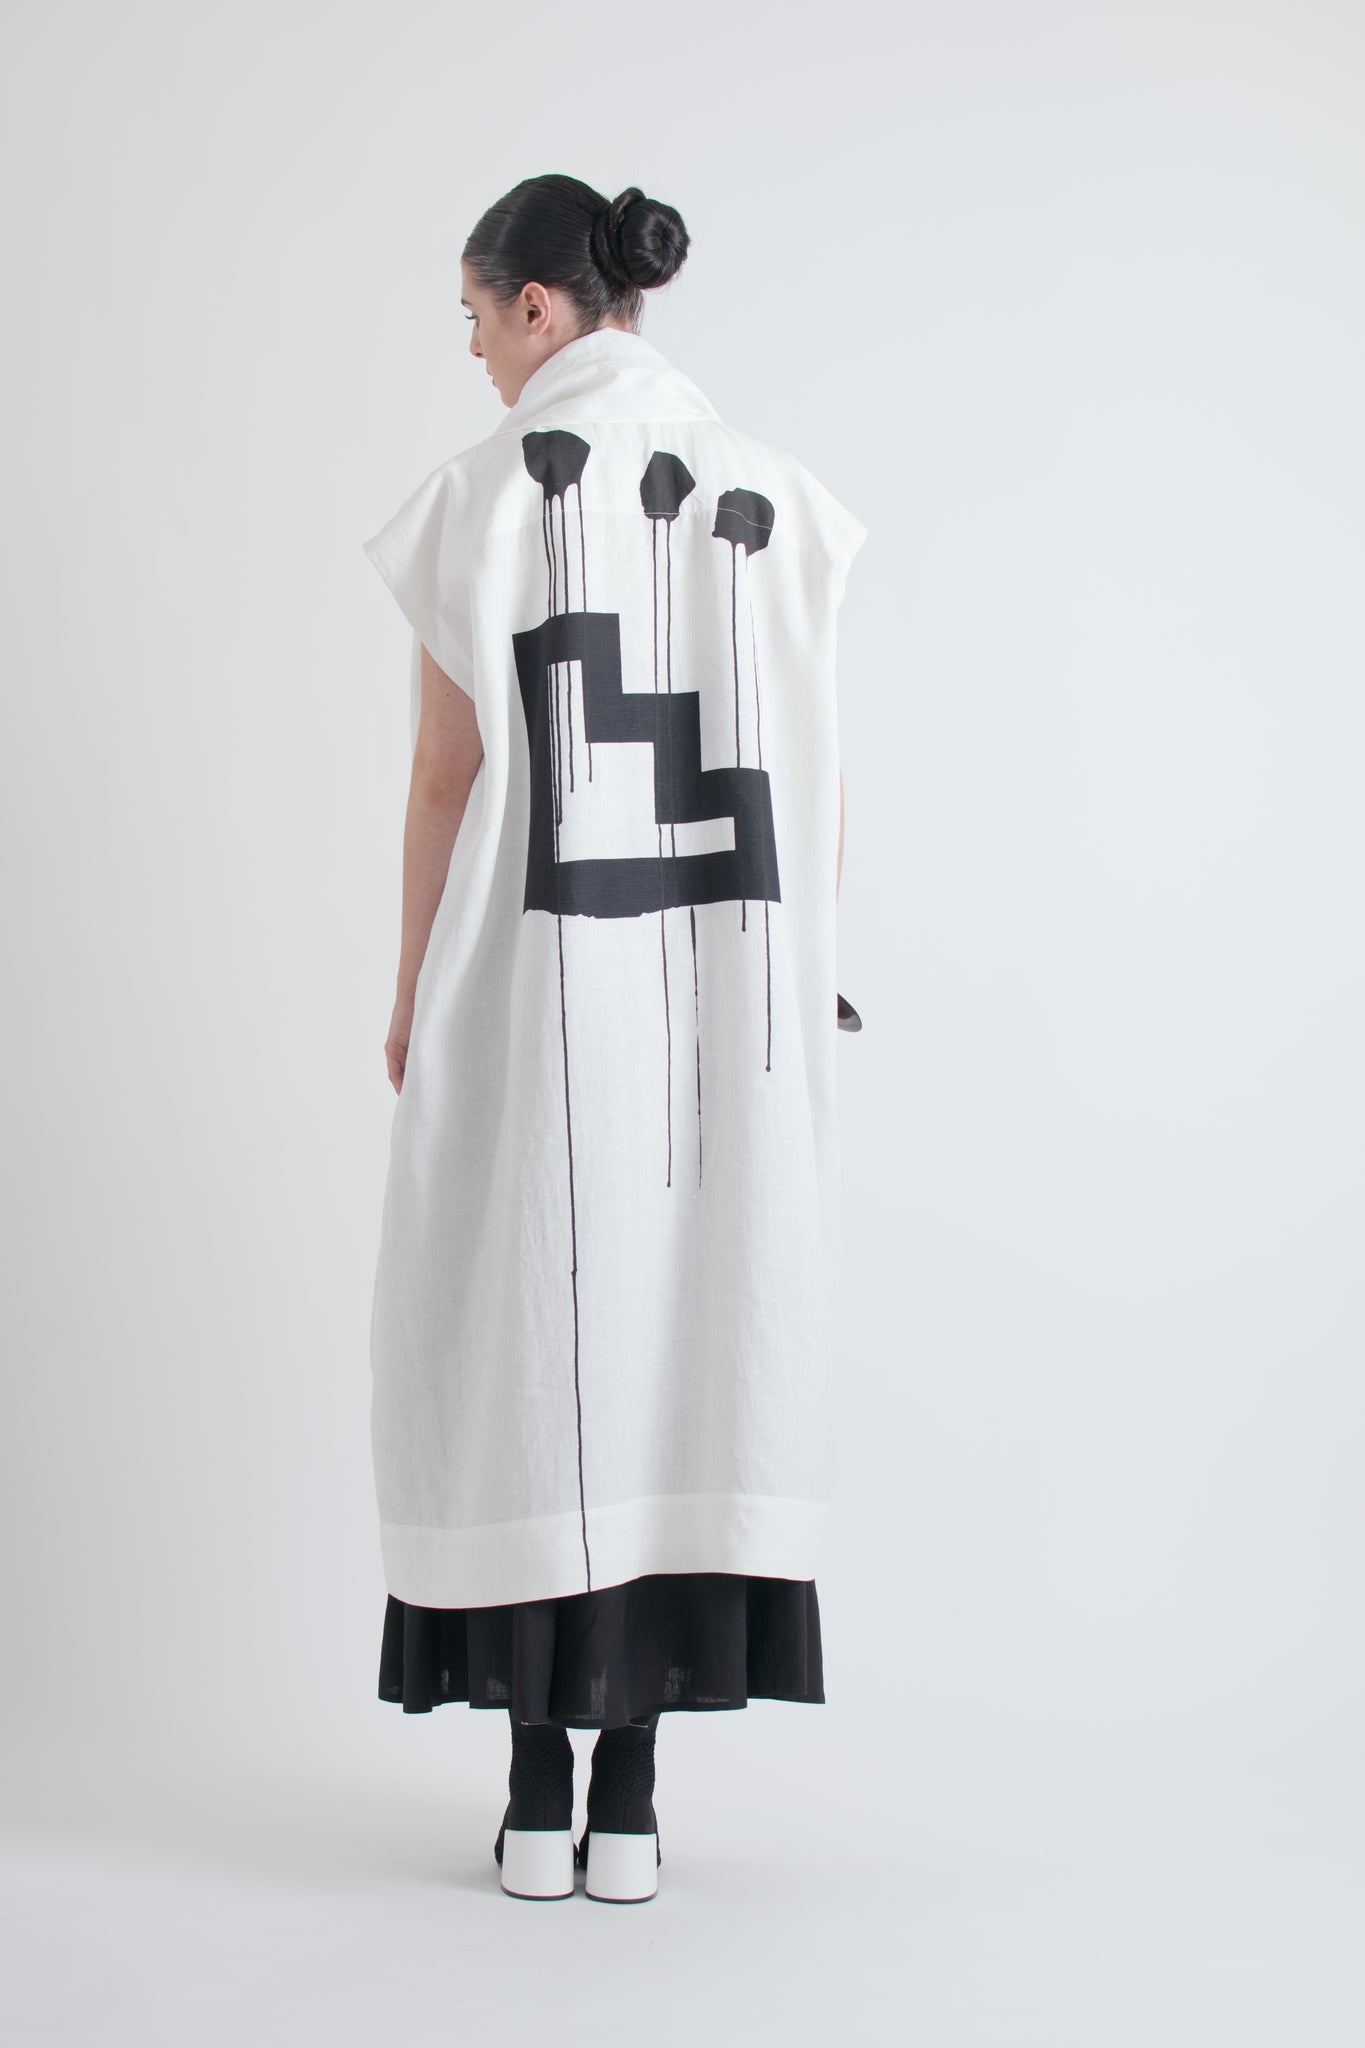 Issey Miyake Ikko Tanaka Graphic Print Linen Robe with Built In